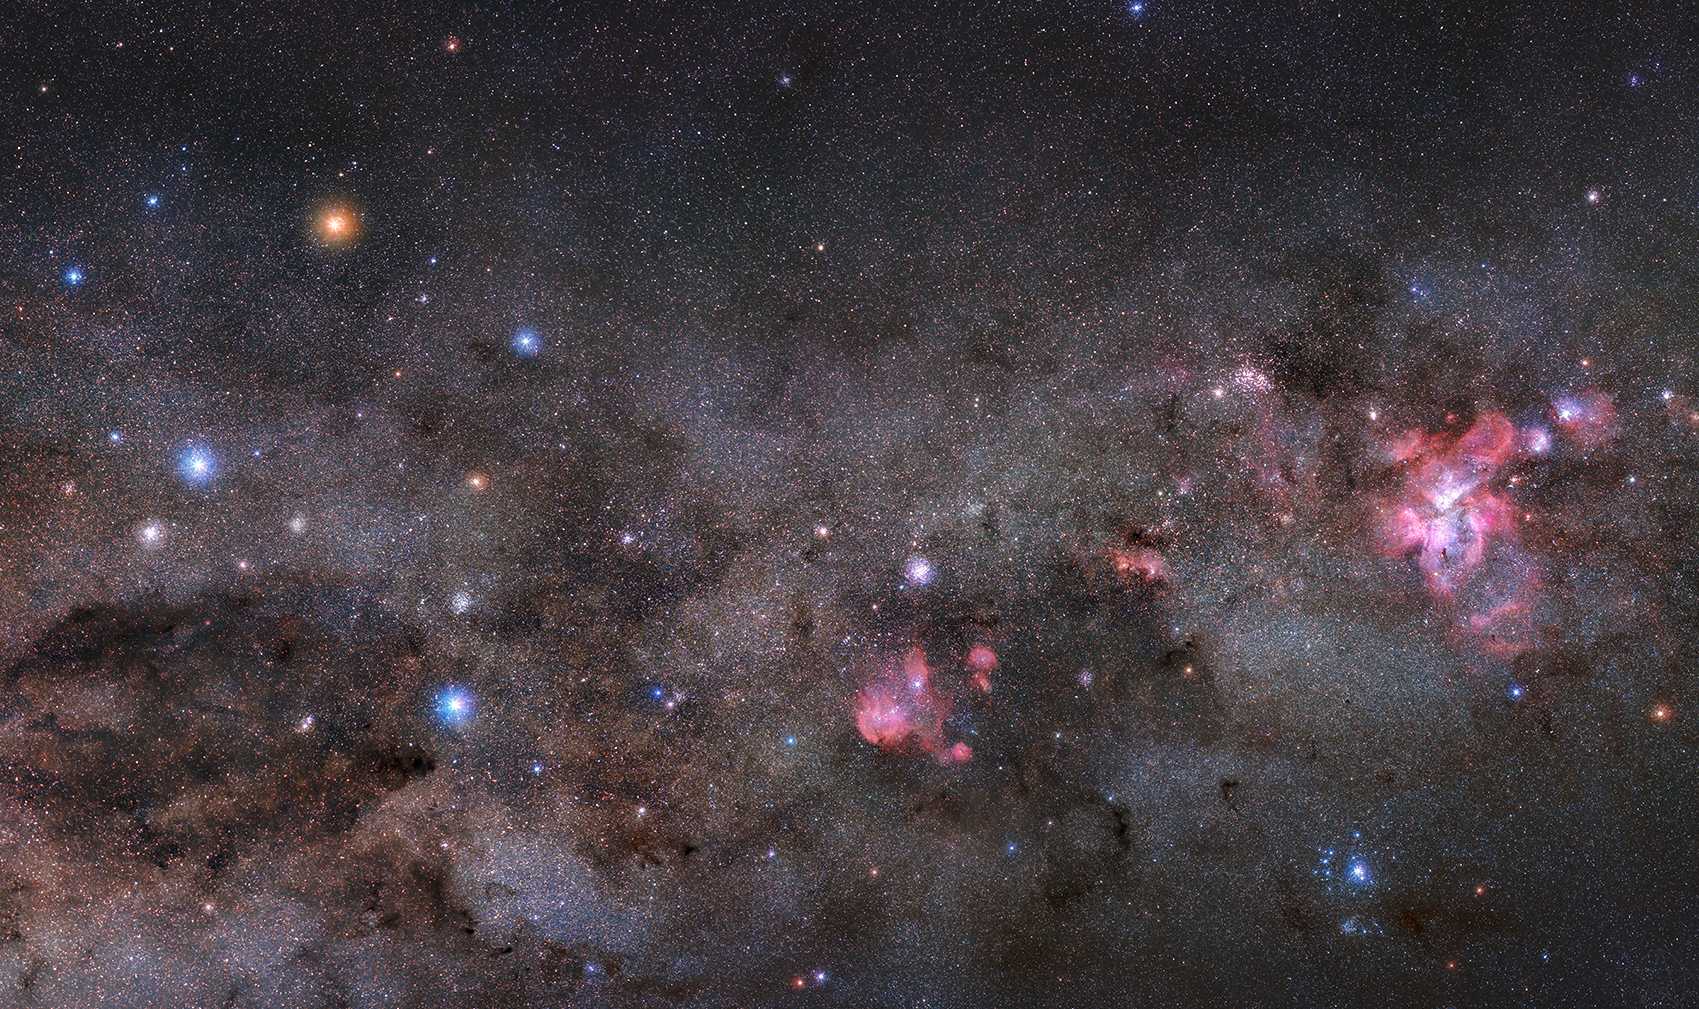 Seguindo ao longo do sul da Via Láctea, esse belo mosaico celestial foi registrado no céu escuro do Brasil. O espetáculo começa com a extensão escura da nebulosa Coalsack no canto inferior esquerdo, dobrada sob um braço do Cruzeiro do Sul. Essa constelação compacta é encimada pela brilhante e amarelada Gamma Crucis, uma estrela gigante fria a apenas 88 anos-luz de distância. Uma linha de Gamma Crucis através da estrela azul na parte inferior da cruz, Alpha Crucis, aponta para o Pólo Sul Celestial. Siga a Via Láctea para a direita e seu olhar varrerá a IC 2948, popularmente conhecida como a nebulosa da Galinha Correndo, antes de chegar a Eta Carinae e à Nebulosa Carina, perto da borda direita do quadro. Com cerca de 200 anos-luz de diâmetro, a Nebulosa Carina fica a cerca de 7.500 anos-luz da Terra